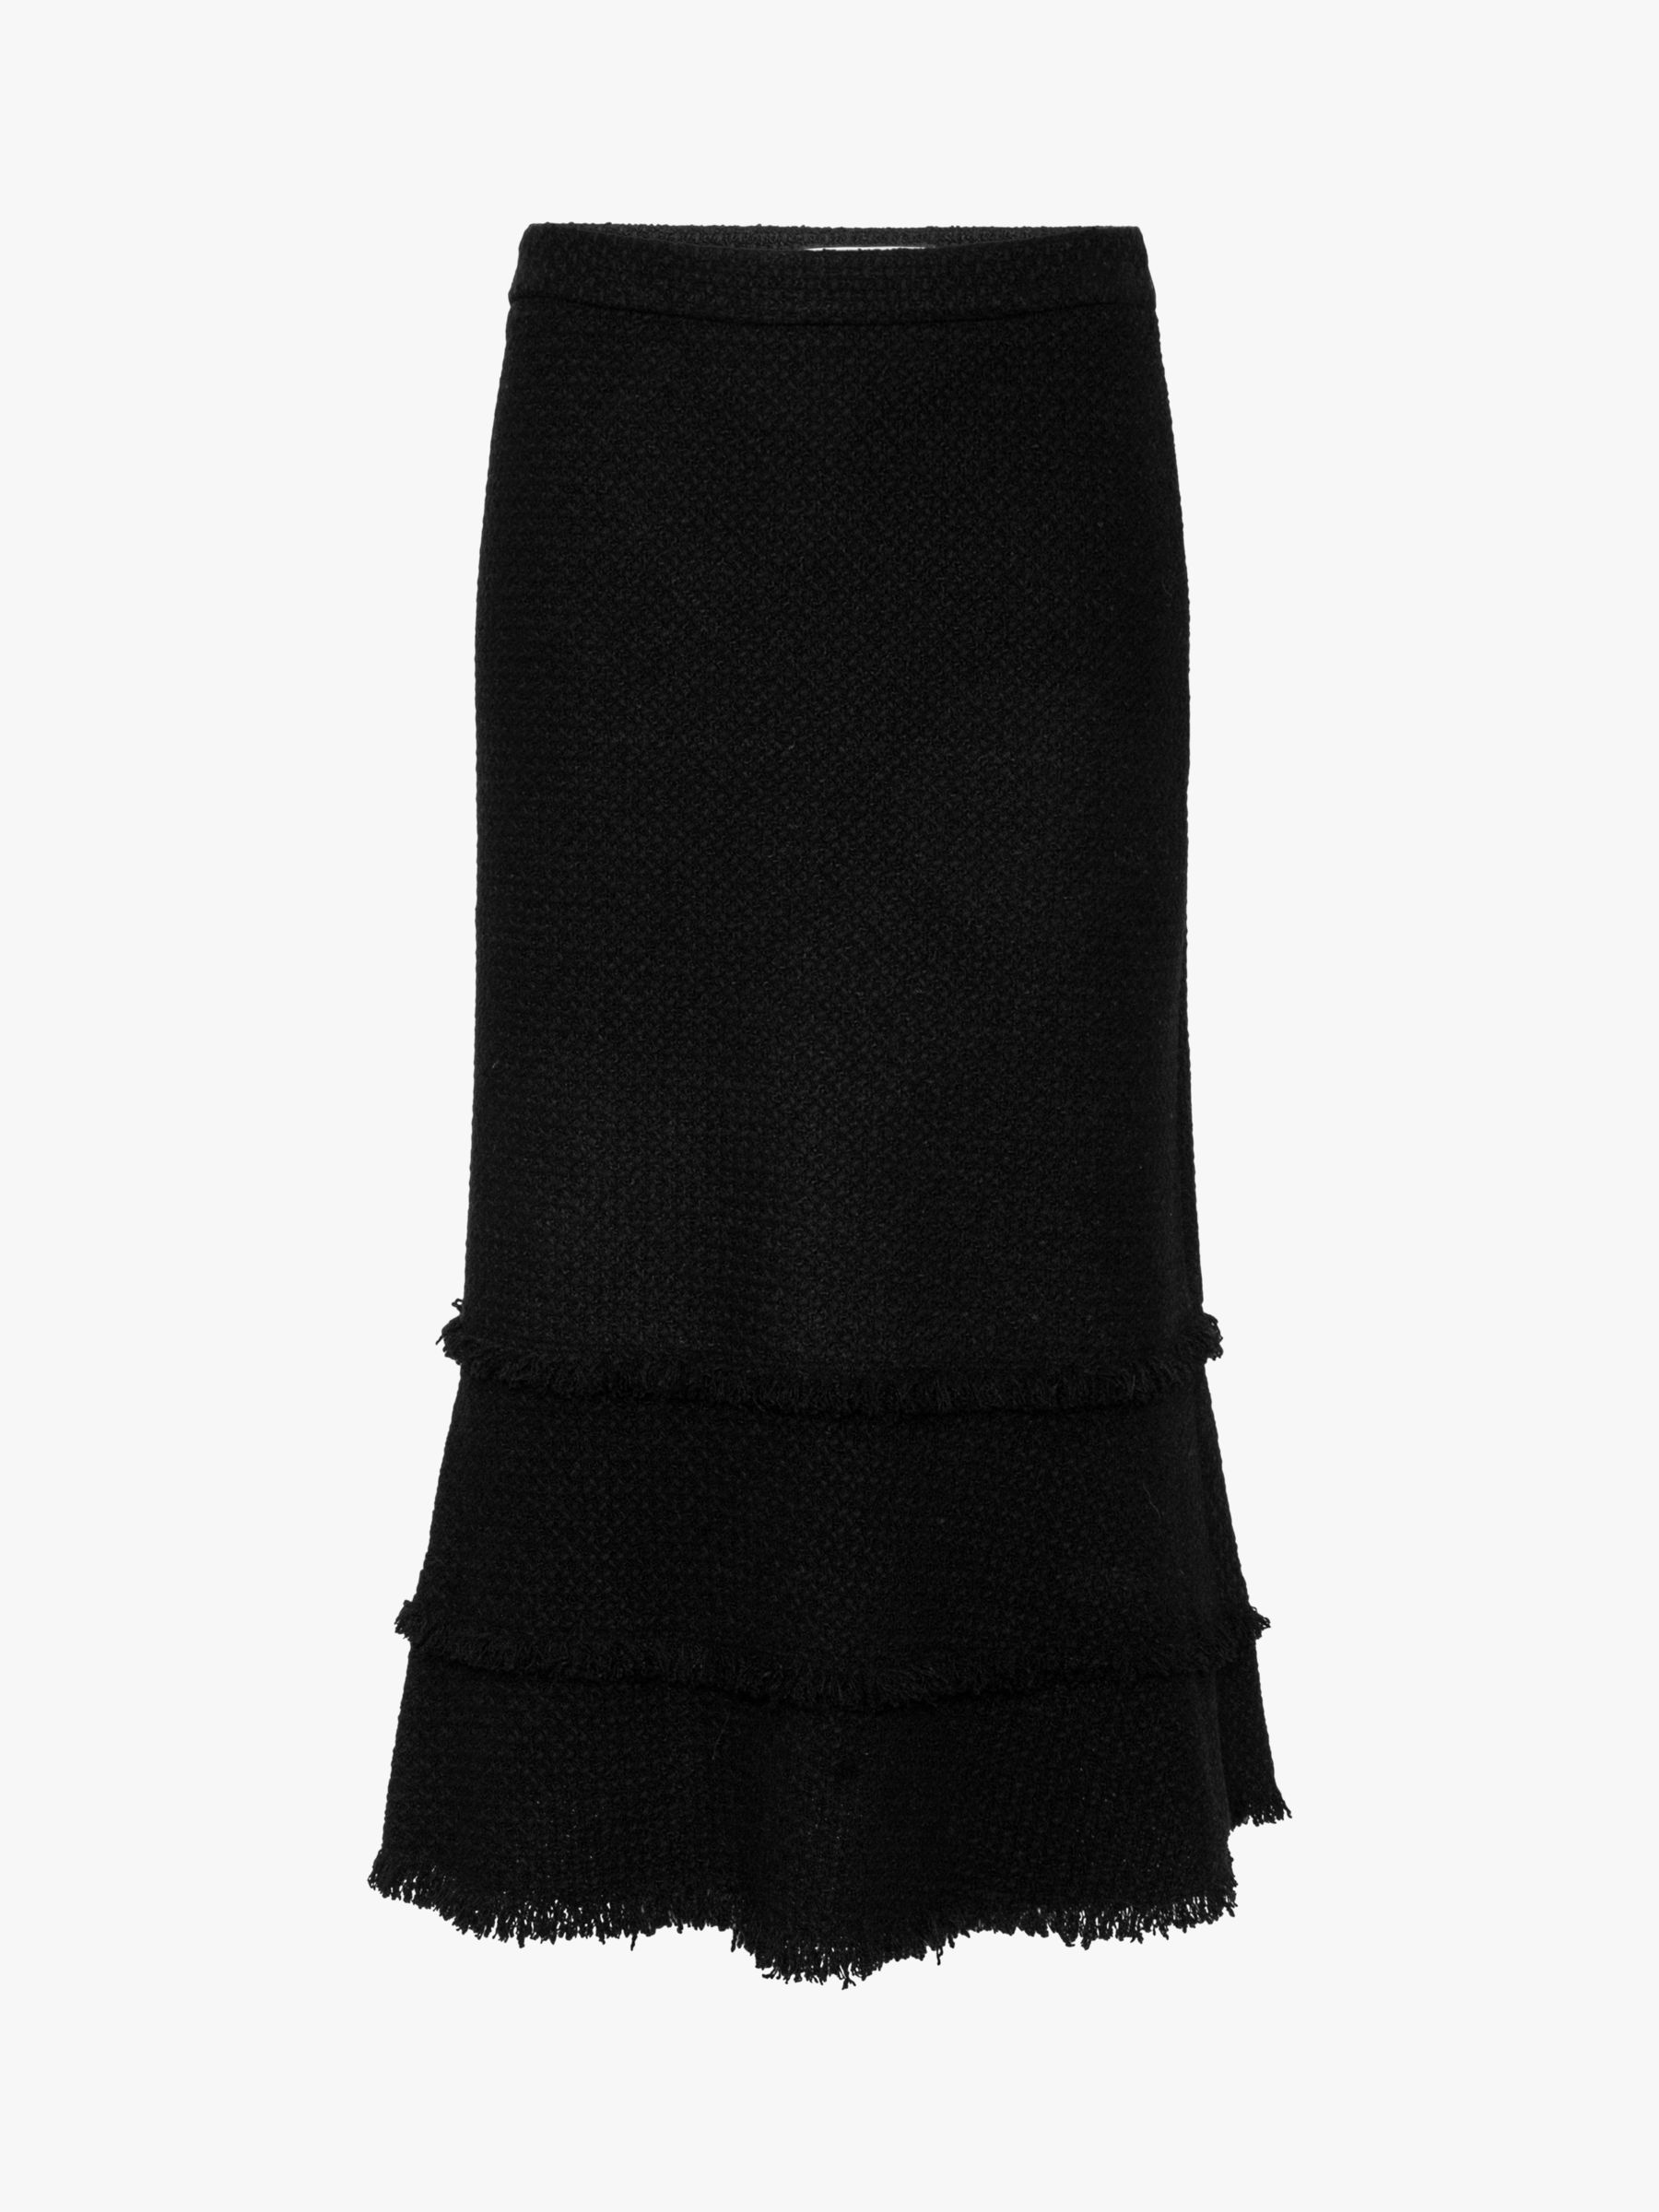 Gerard Darel Matilda Tulip Midi Skirt, Black at John Lewis & Partners